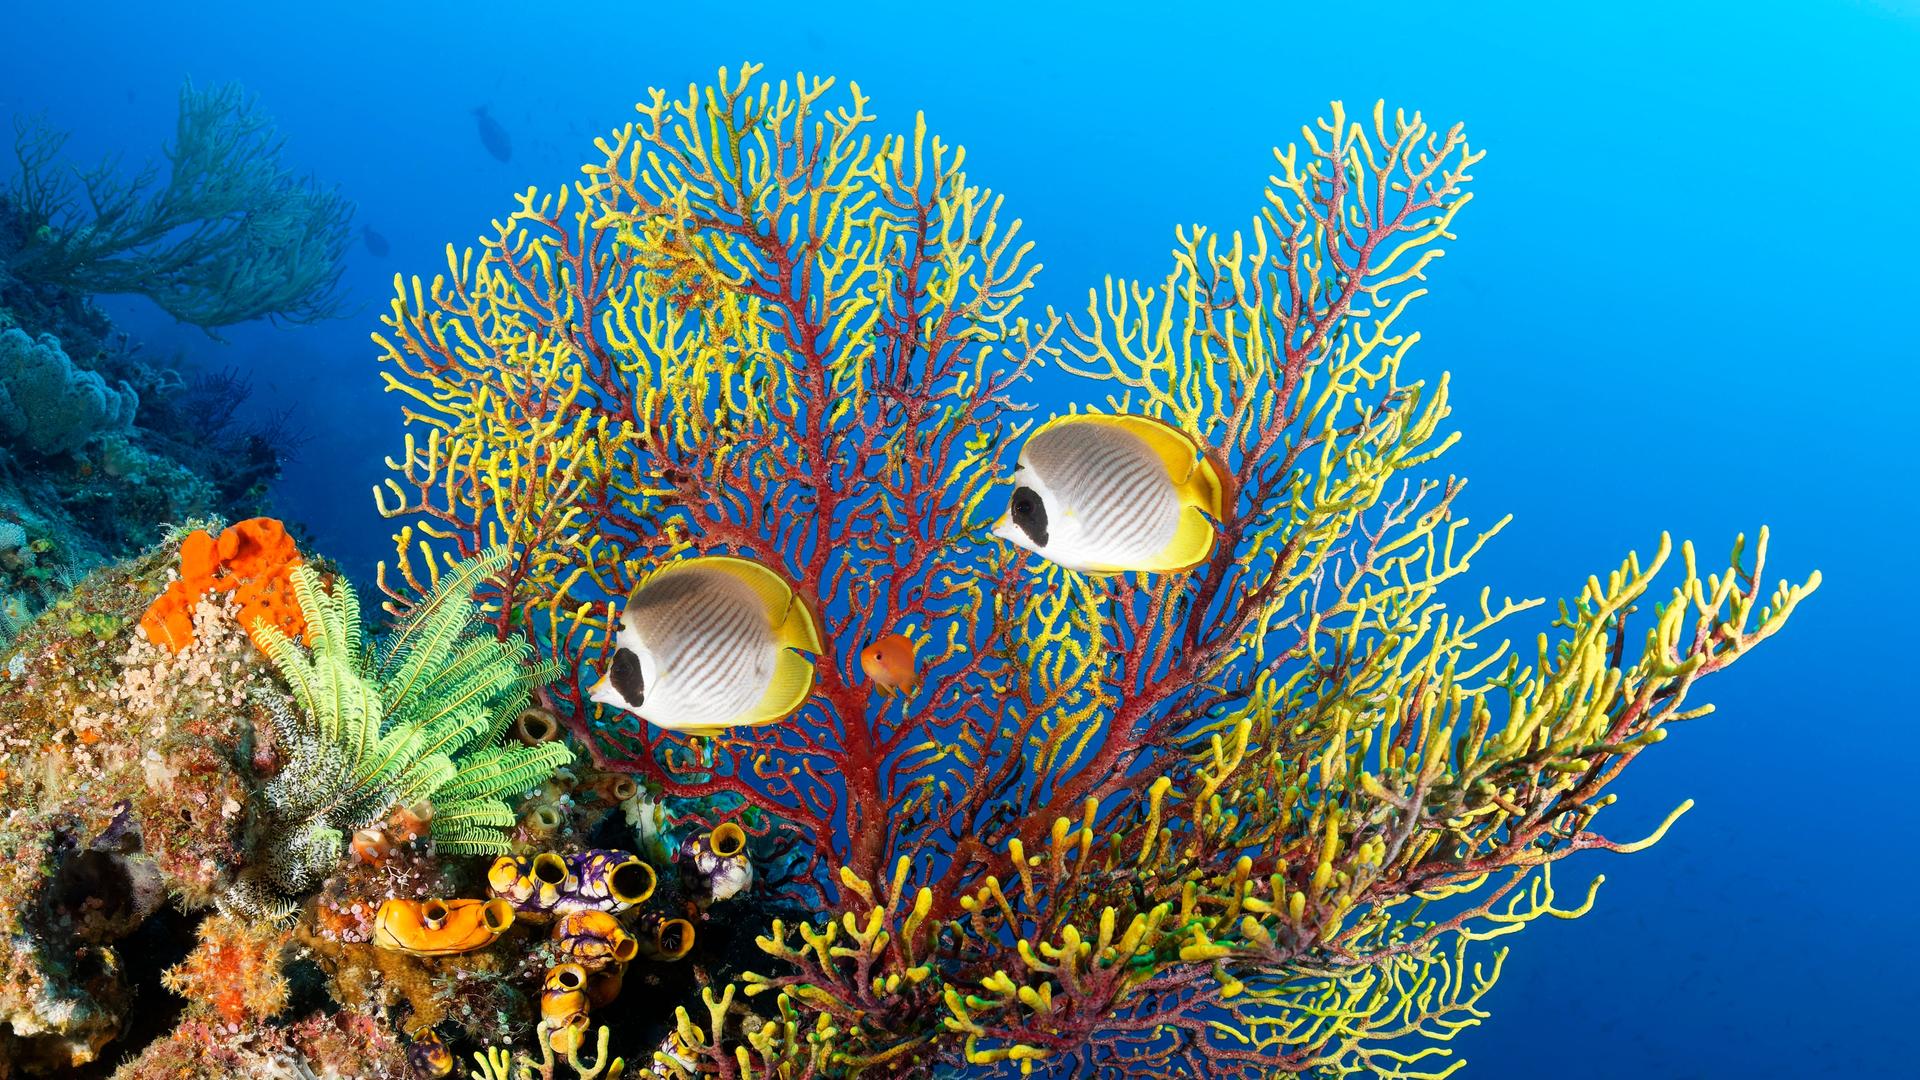 Panda Falterfisch (Chaetodon adiergastos) vor Rotgelbe Gorgonie, Seefächer (Euplexaura), Polypen eingezogen, rot, gelb, links unten Gruppe Gold-Seescheide (Polycarpa aurata), Pazifik, Great Barrier Reef. Es liegt im australischen Ozean und gehört zum Unesco Weltnatuerbe.